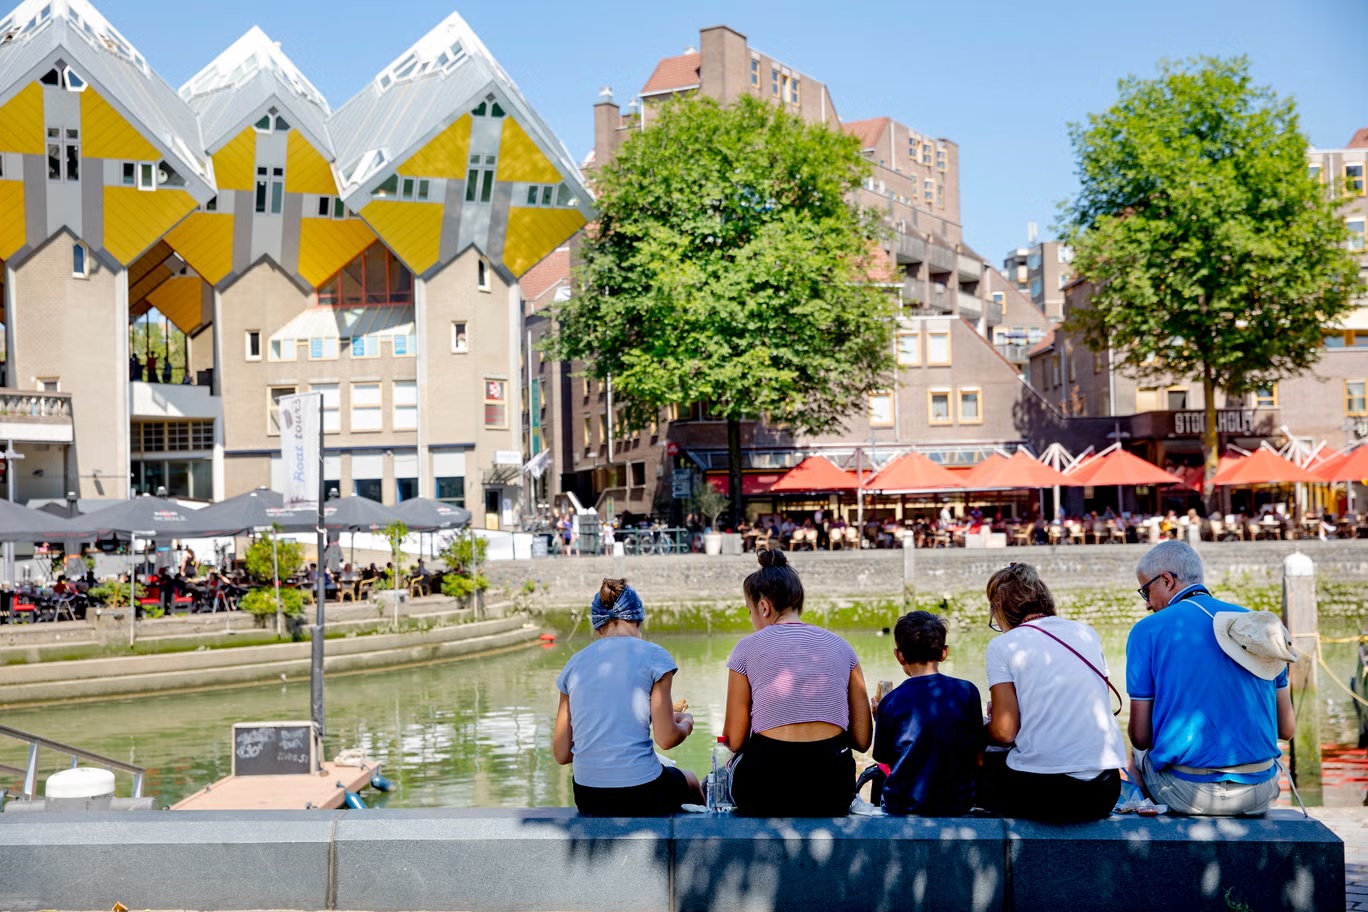 البيوت المكعبة الصفراء في روتردام تكتسب إشادة من عشاق الهندسة المعمارية (إيريس فان دين برويك)